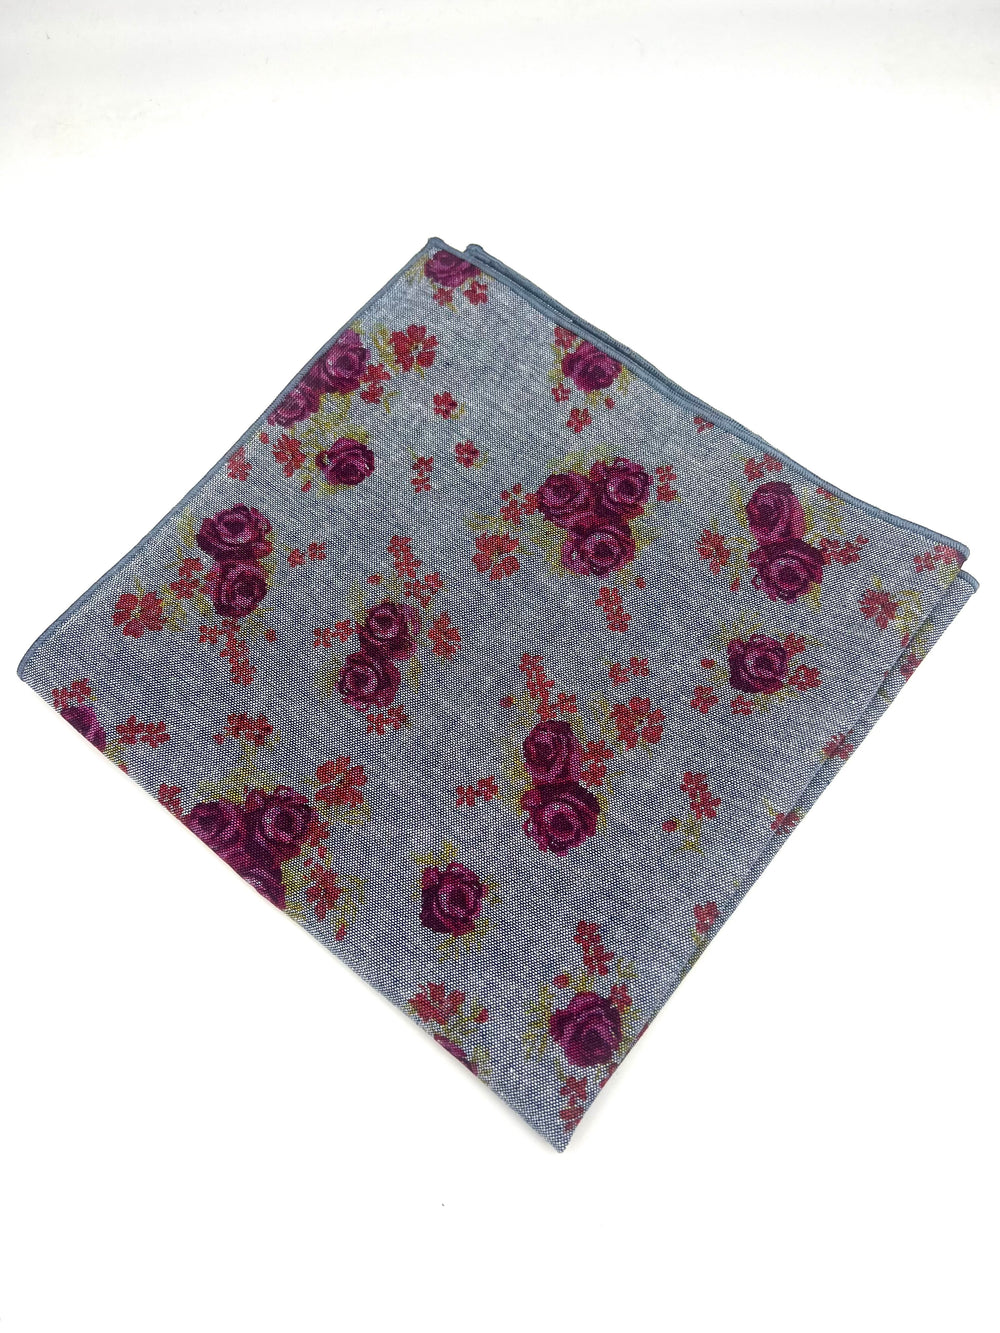 The Rose Chambray Handkerchief